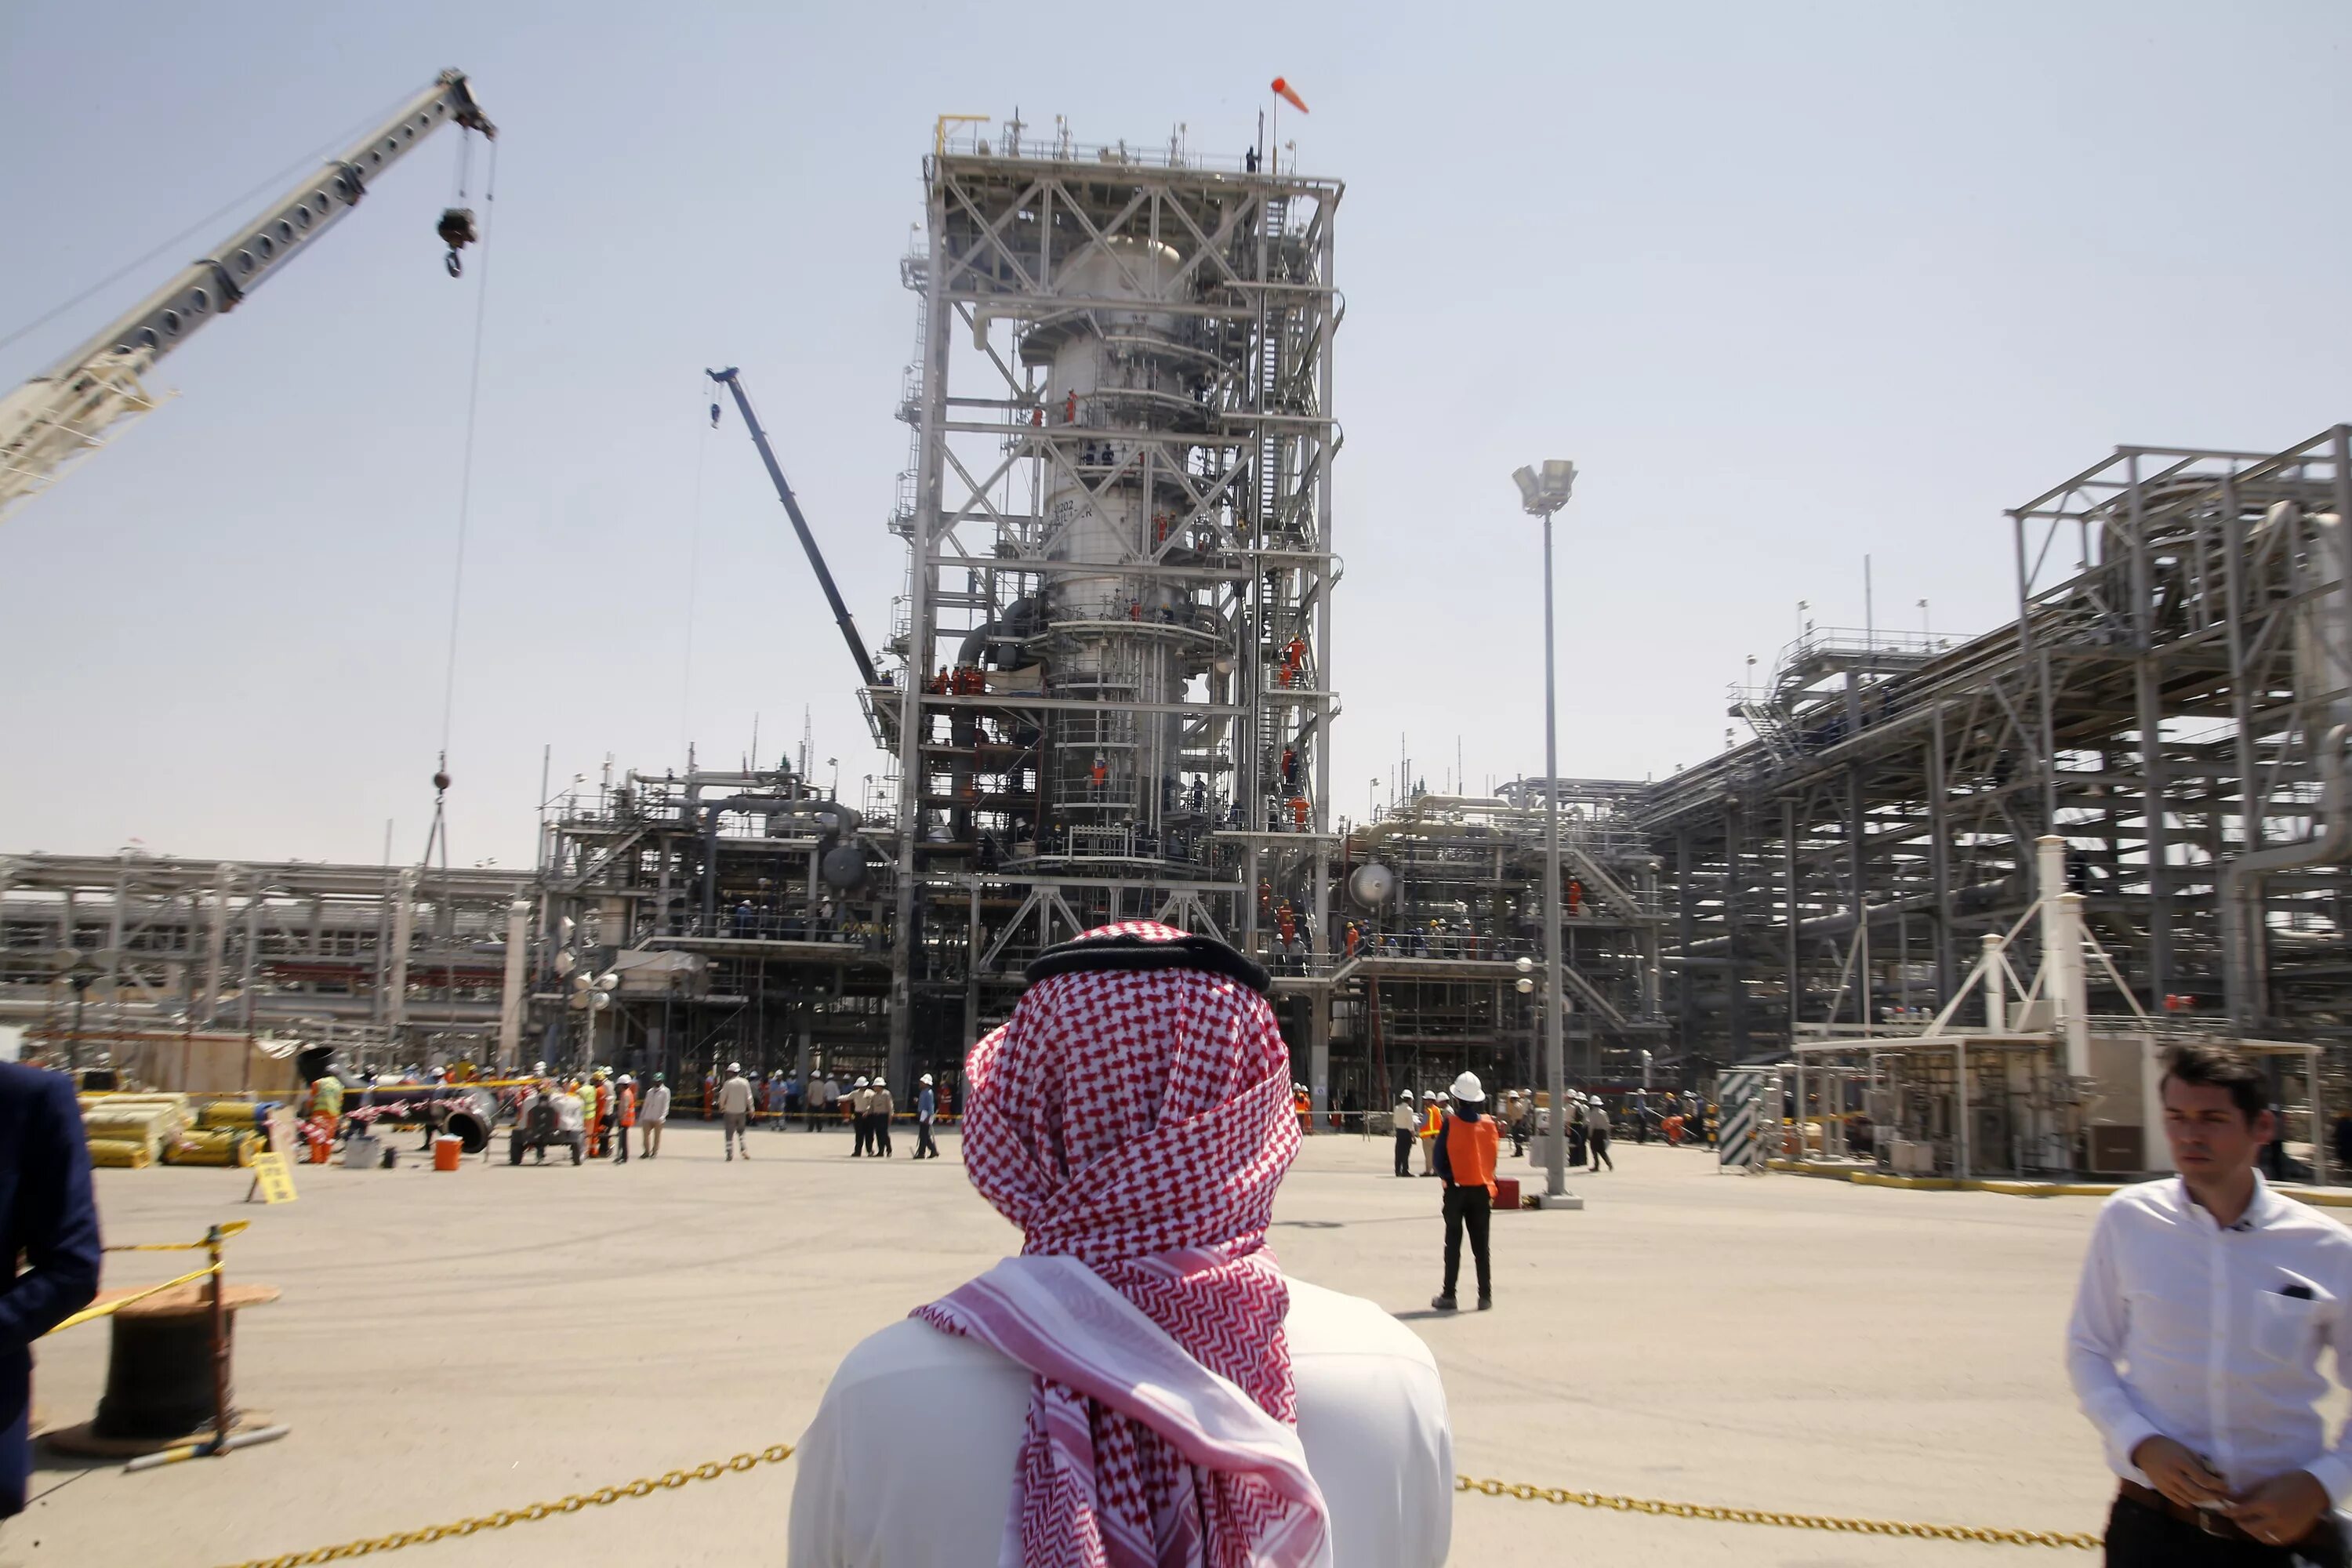 Нефтеперерабатывающий завод в Саудовской Аравии. Объединённые арабские эмираты добыча нефти. Саудовская Аравия нефтедобыча. Нефтедобыча в ОАЭ. Нефть арабов